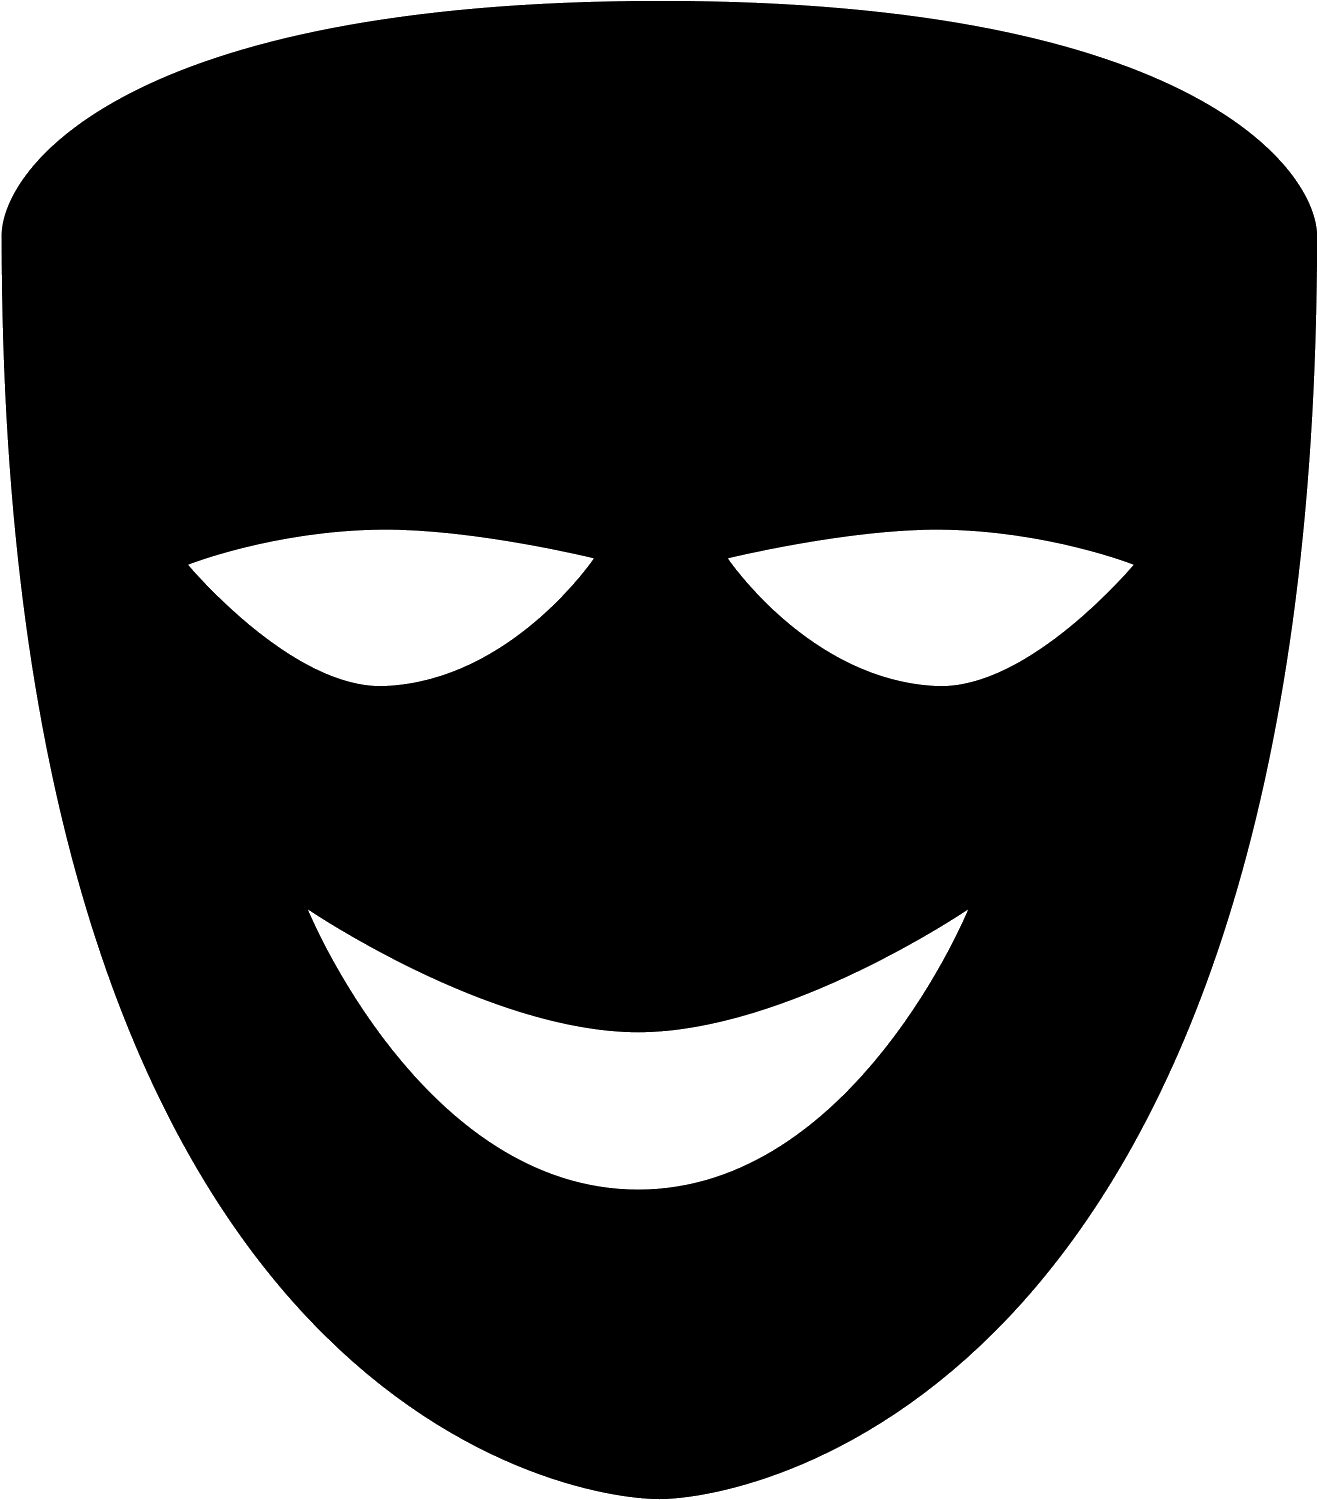 Komedya silweta Pic Pic